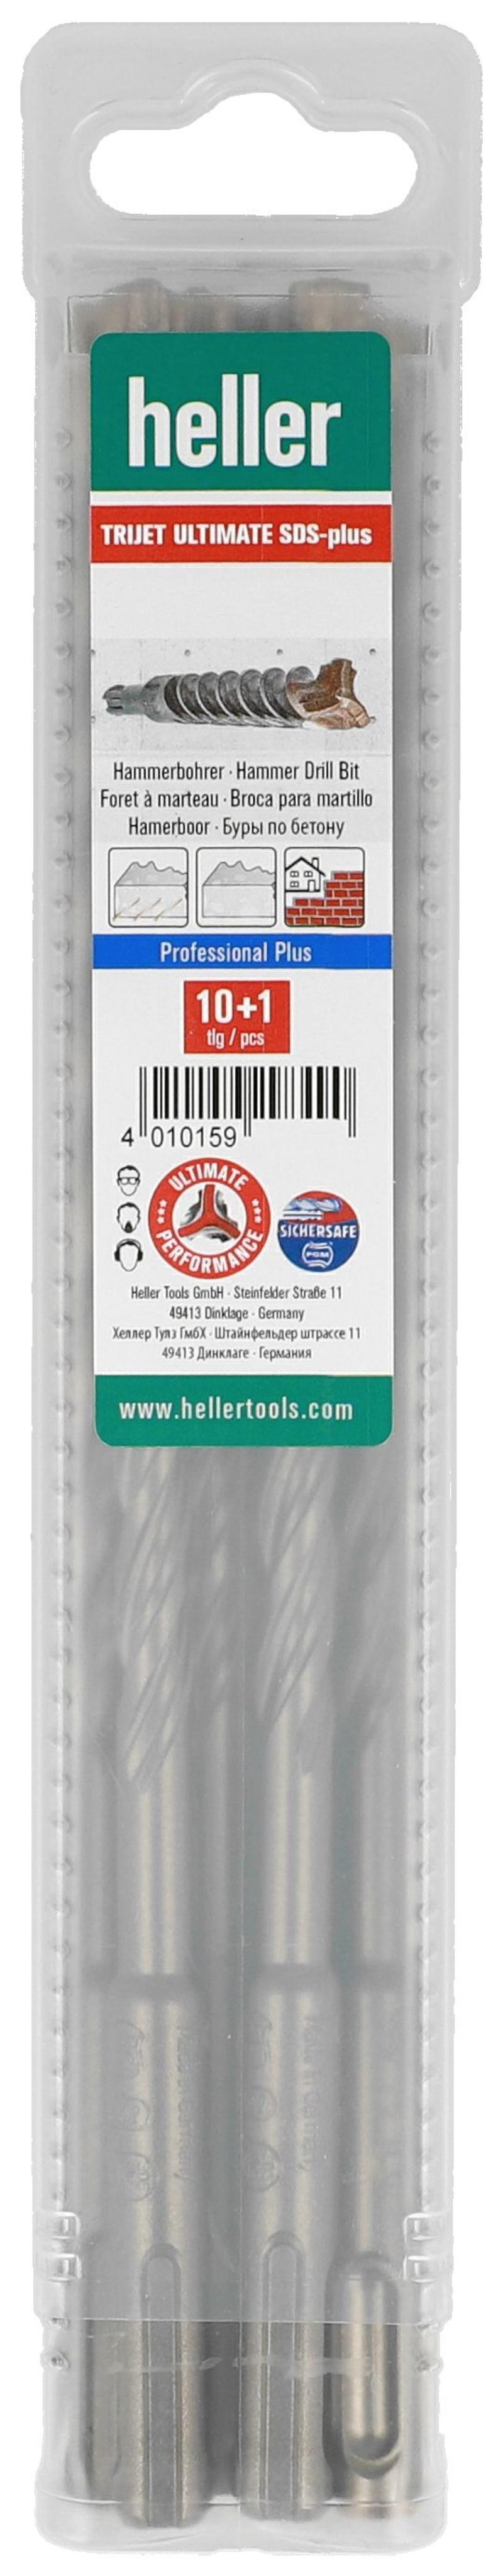 Heller hammer drill 3 chisel drill Bulk purchase 11 pack